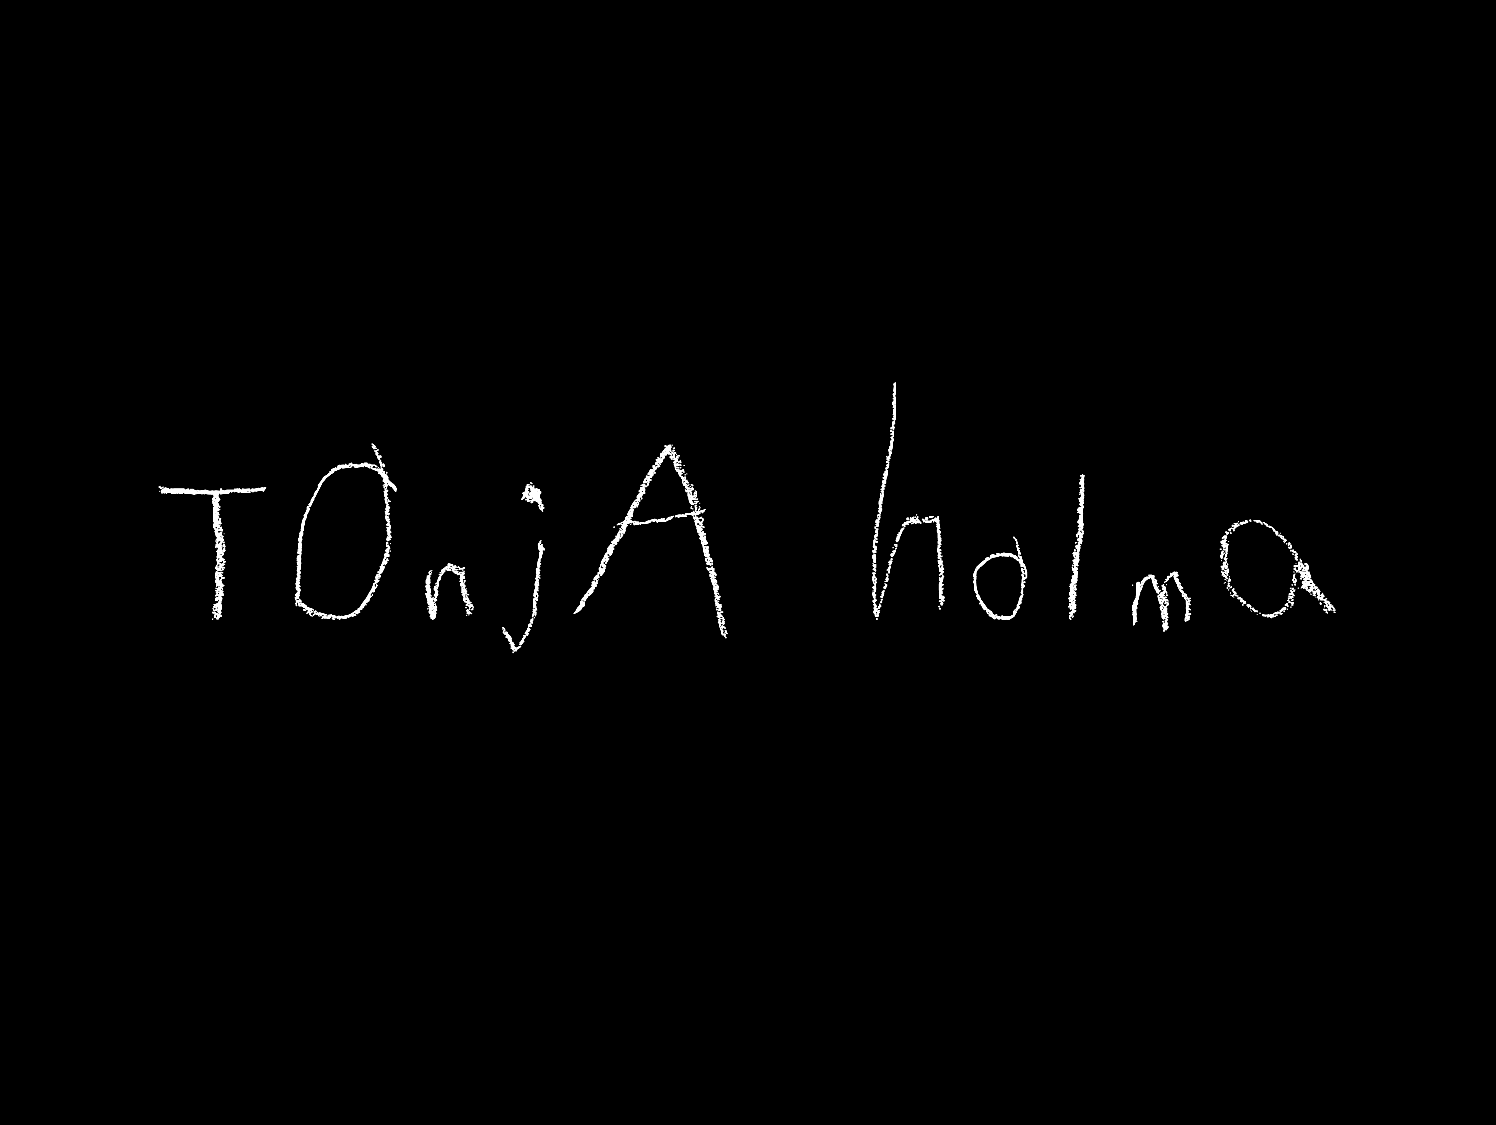 Pryda Presents Tonja Holma Tonja EP